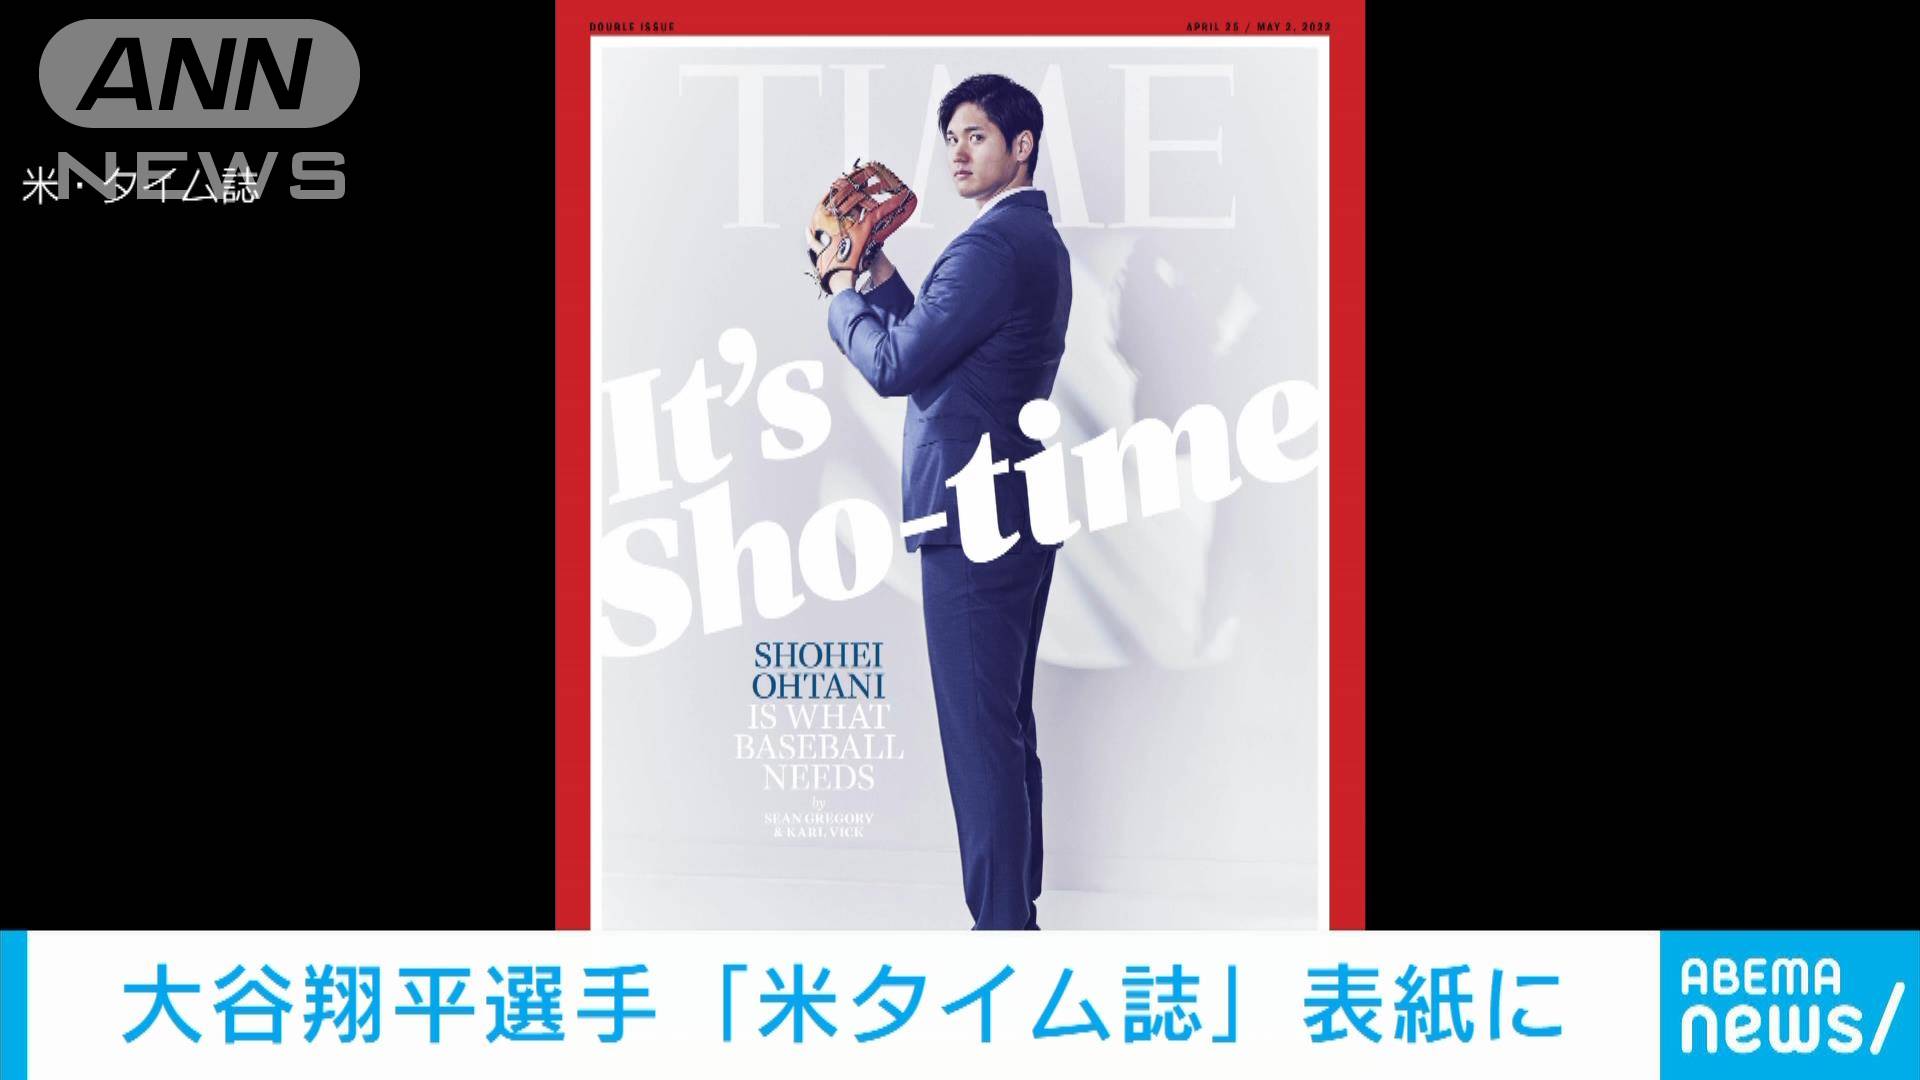 540円 【テレビで話題】 大谷翔平選手 タイム誌表紙のポスター